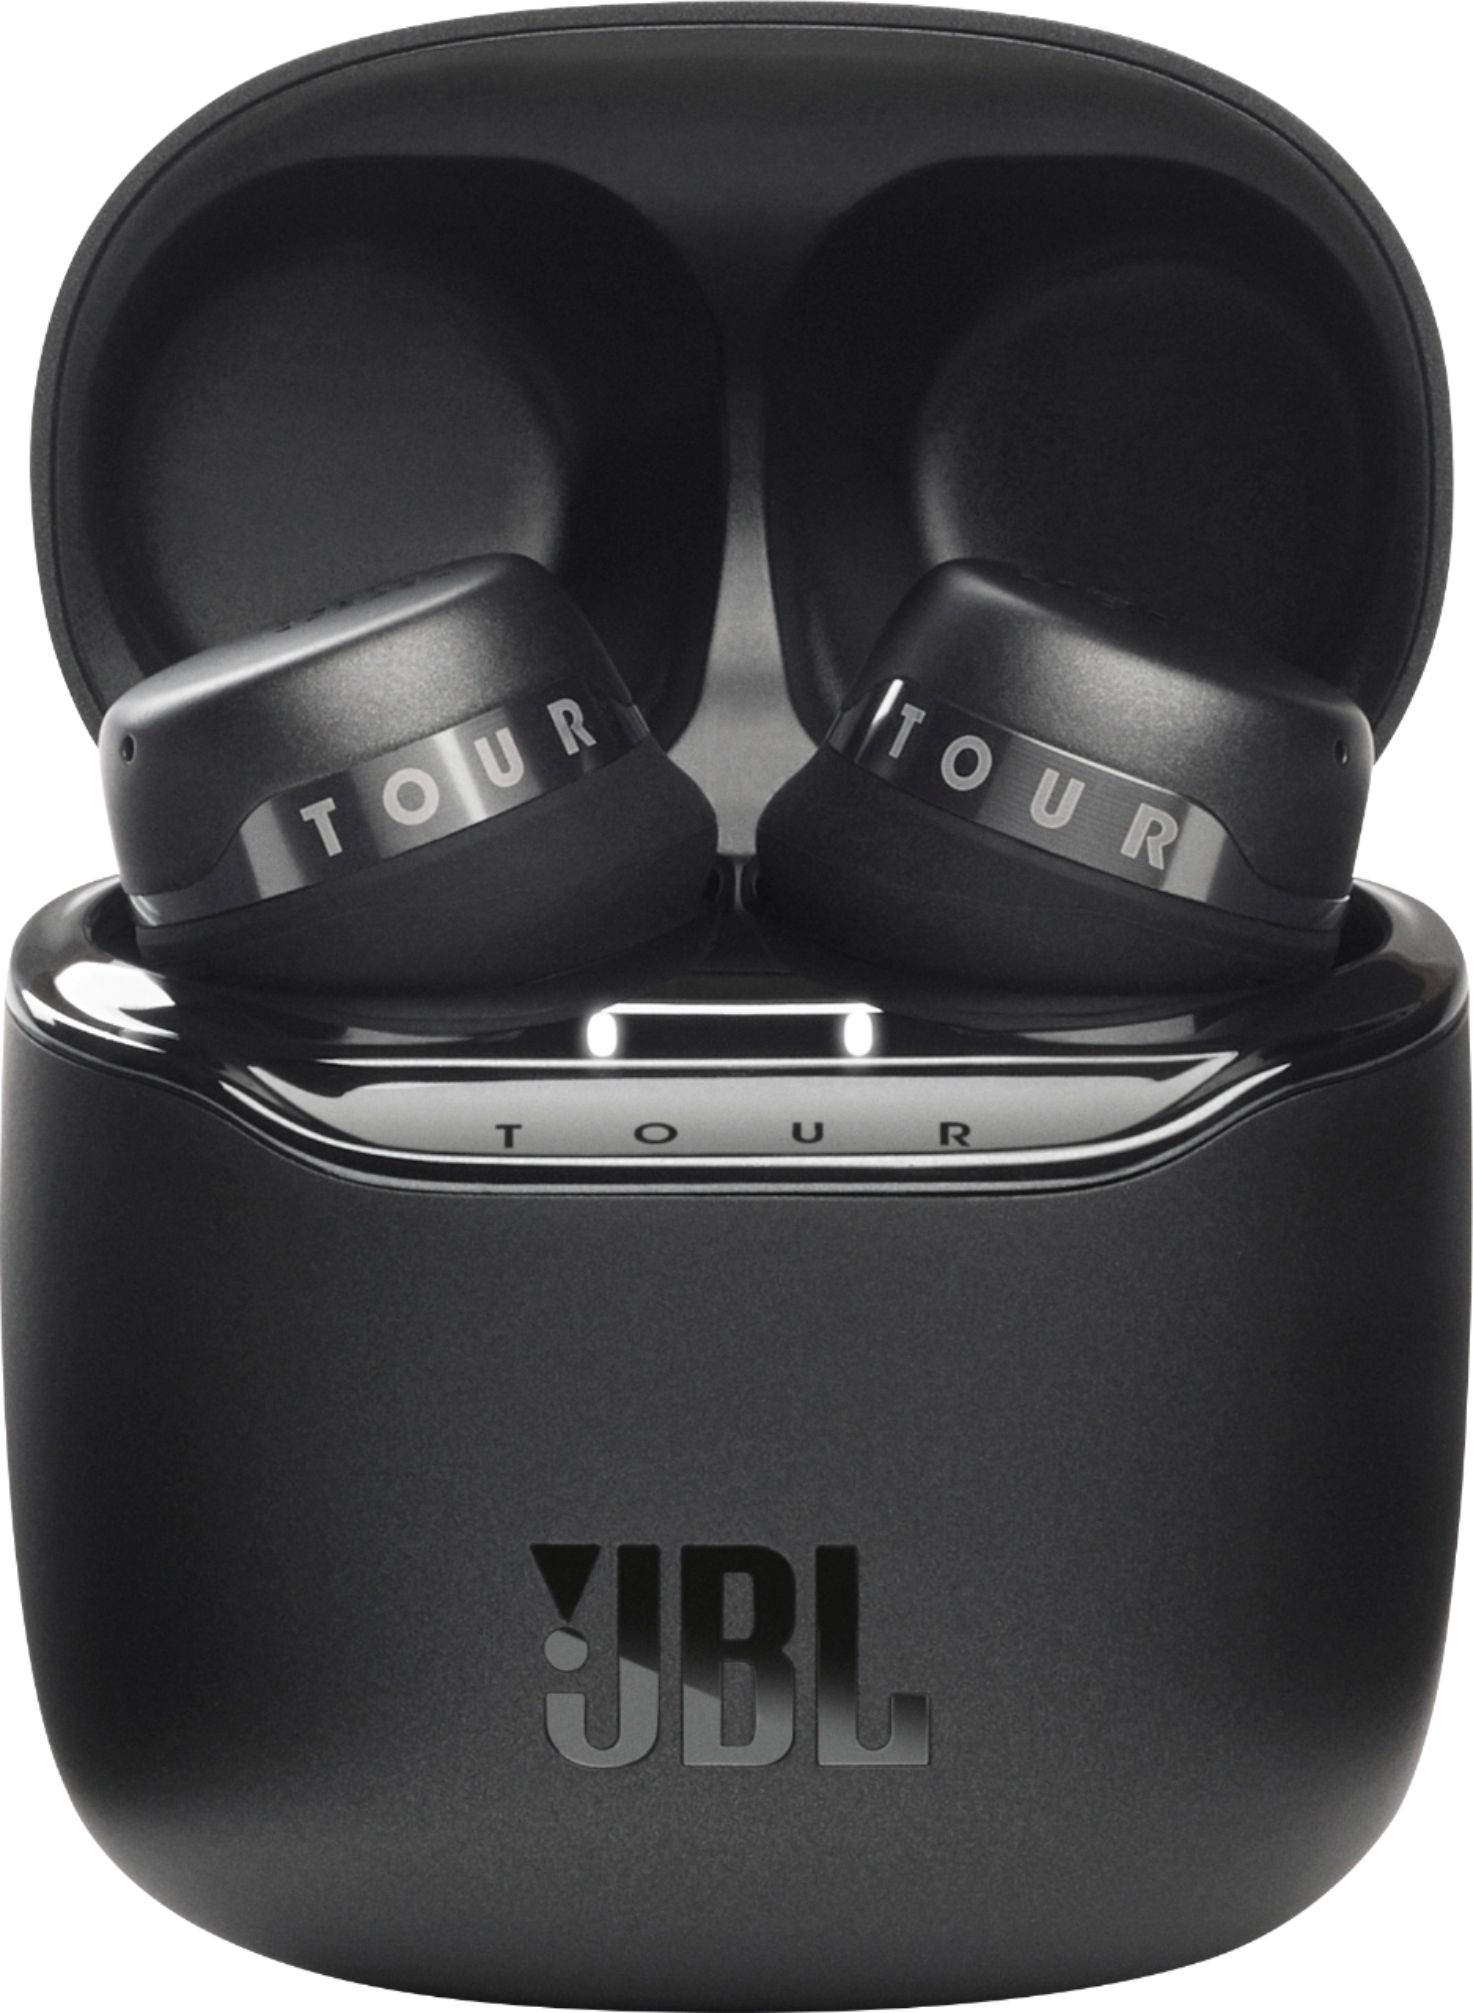 JBL Tour Pro Plus True Wireless Noise Cancelling Headphones Black 